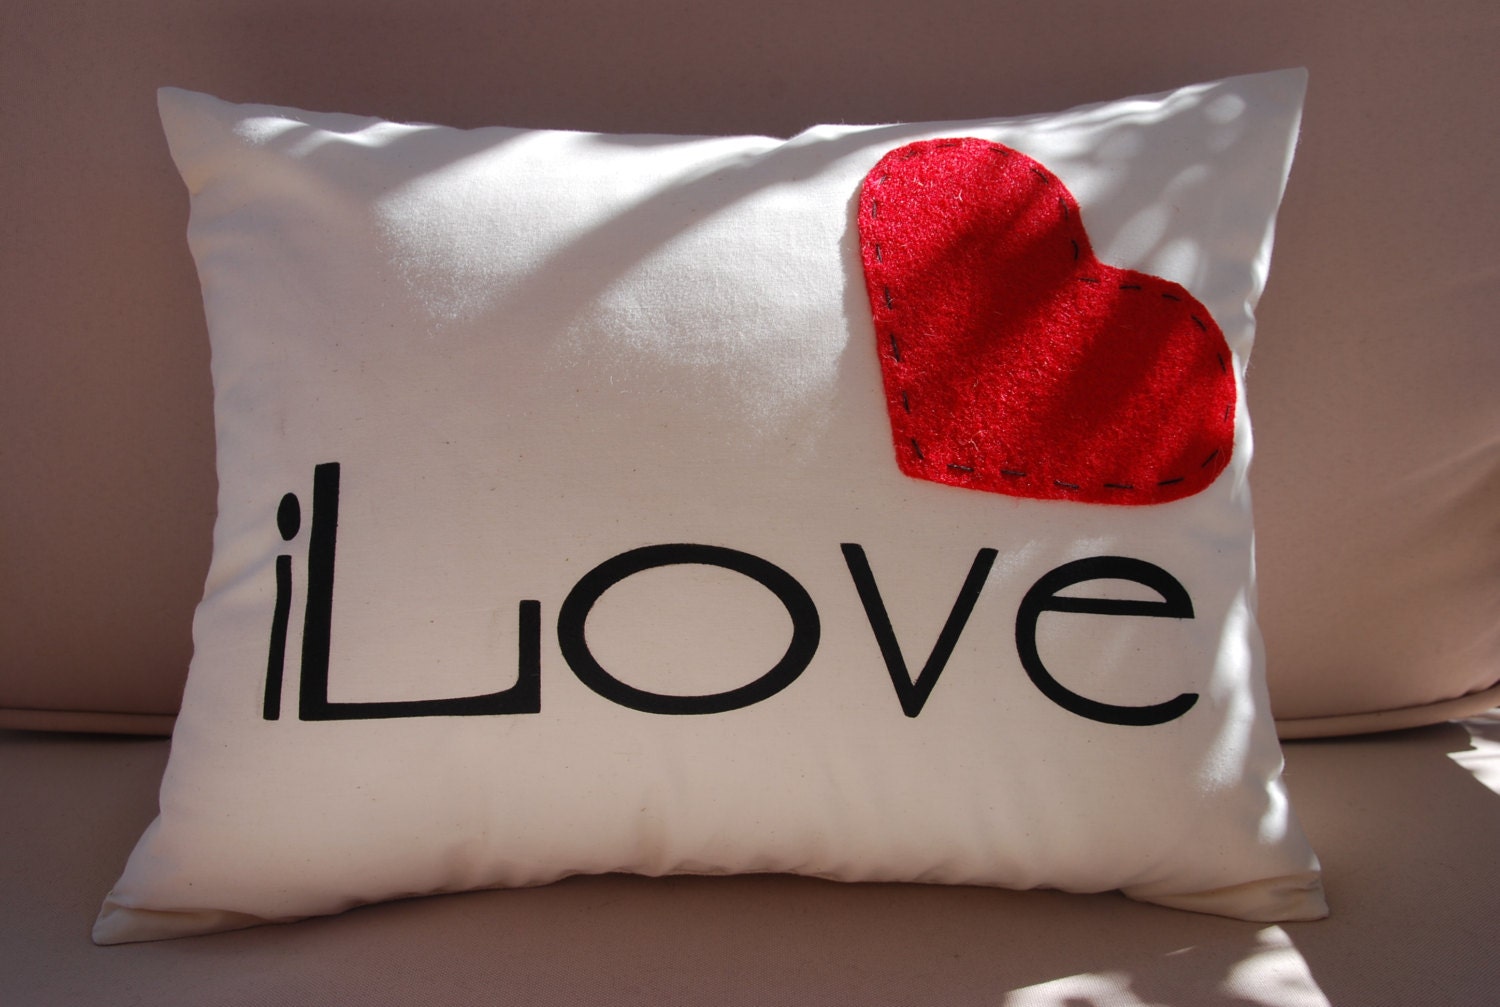 iLove Heart Pillow - Wedding - Anniversary - Throw Pillow - Toss Pillow - 12"x16" Handprinted